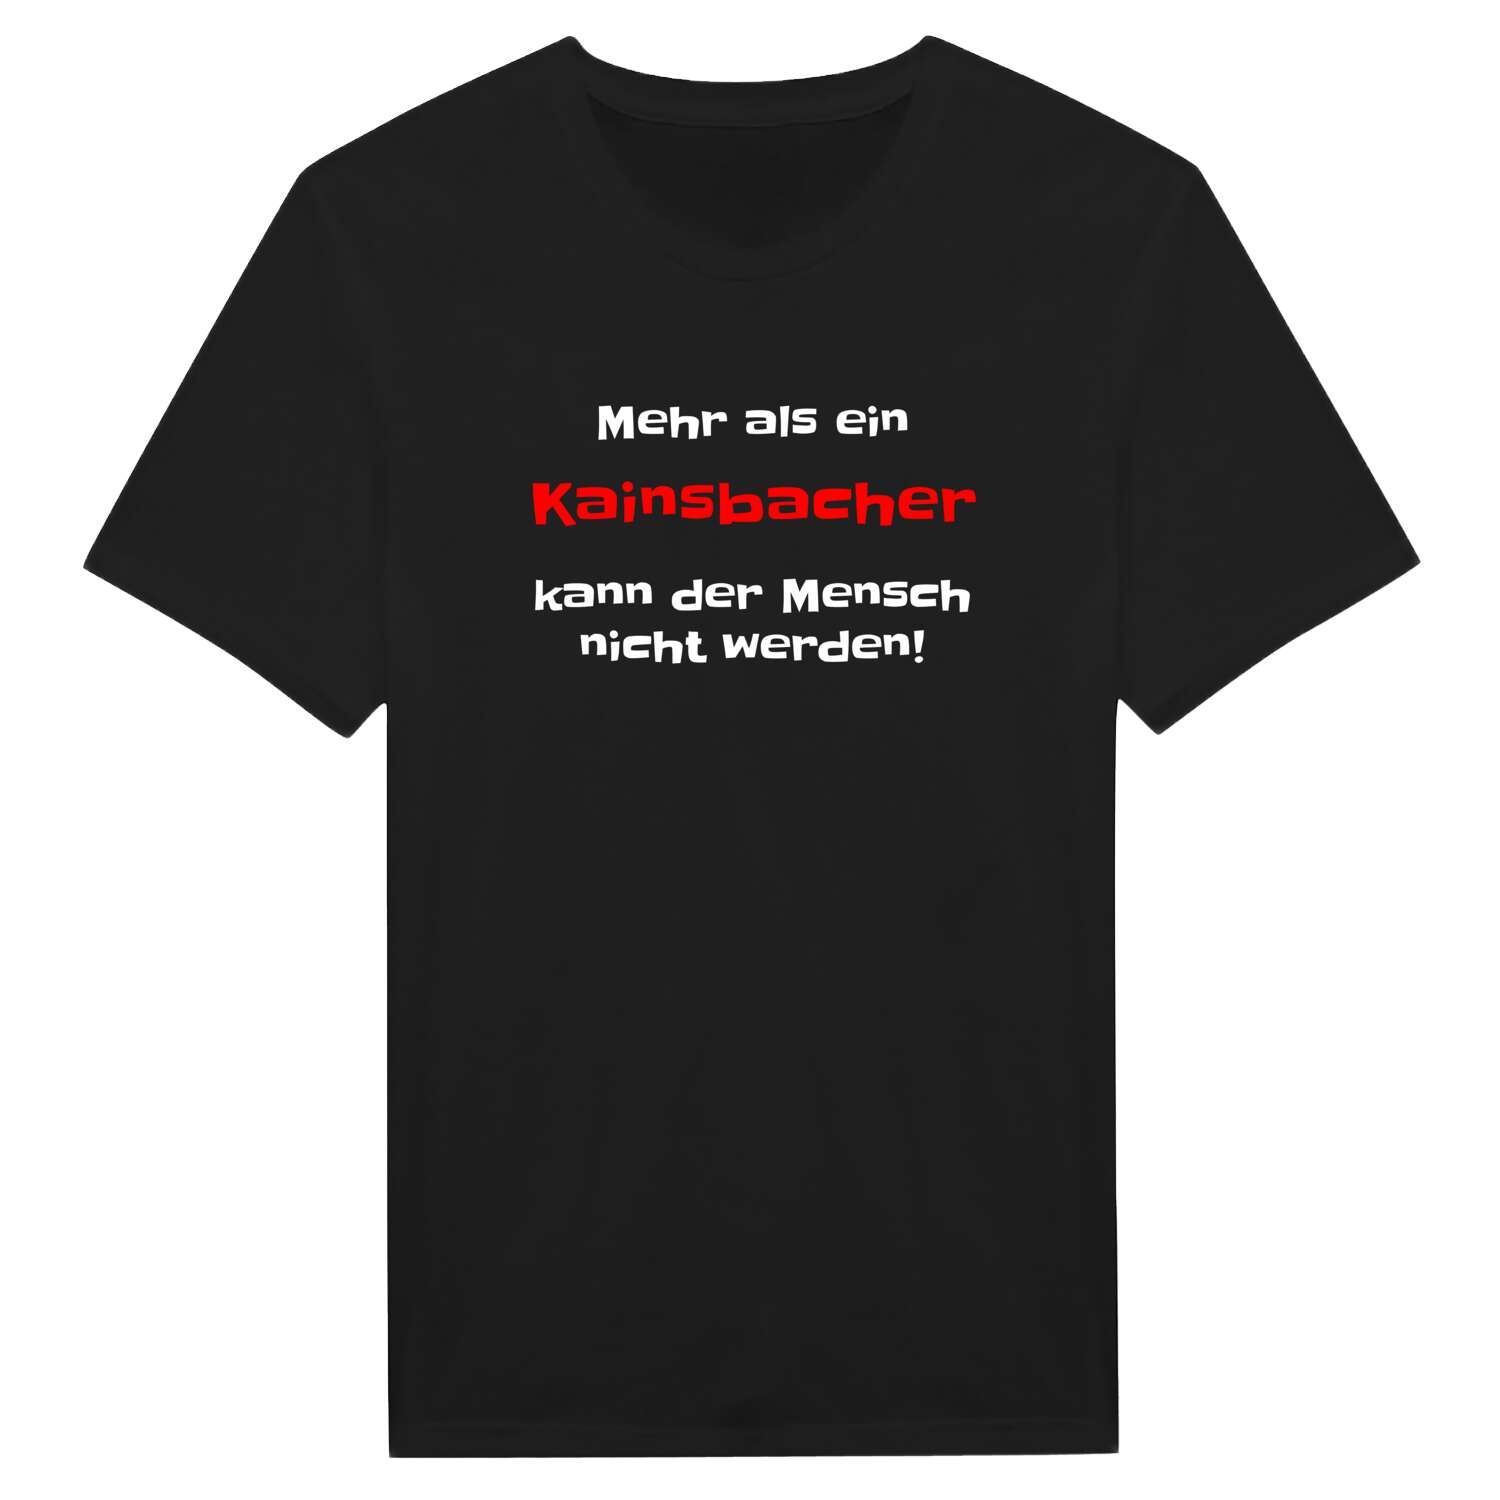 Kainsbach T-Shirt »Mehr als ein«